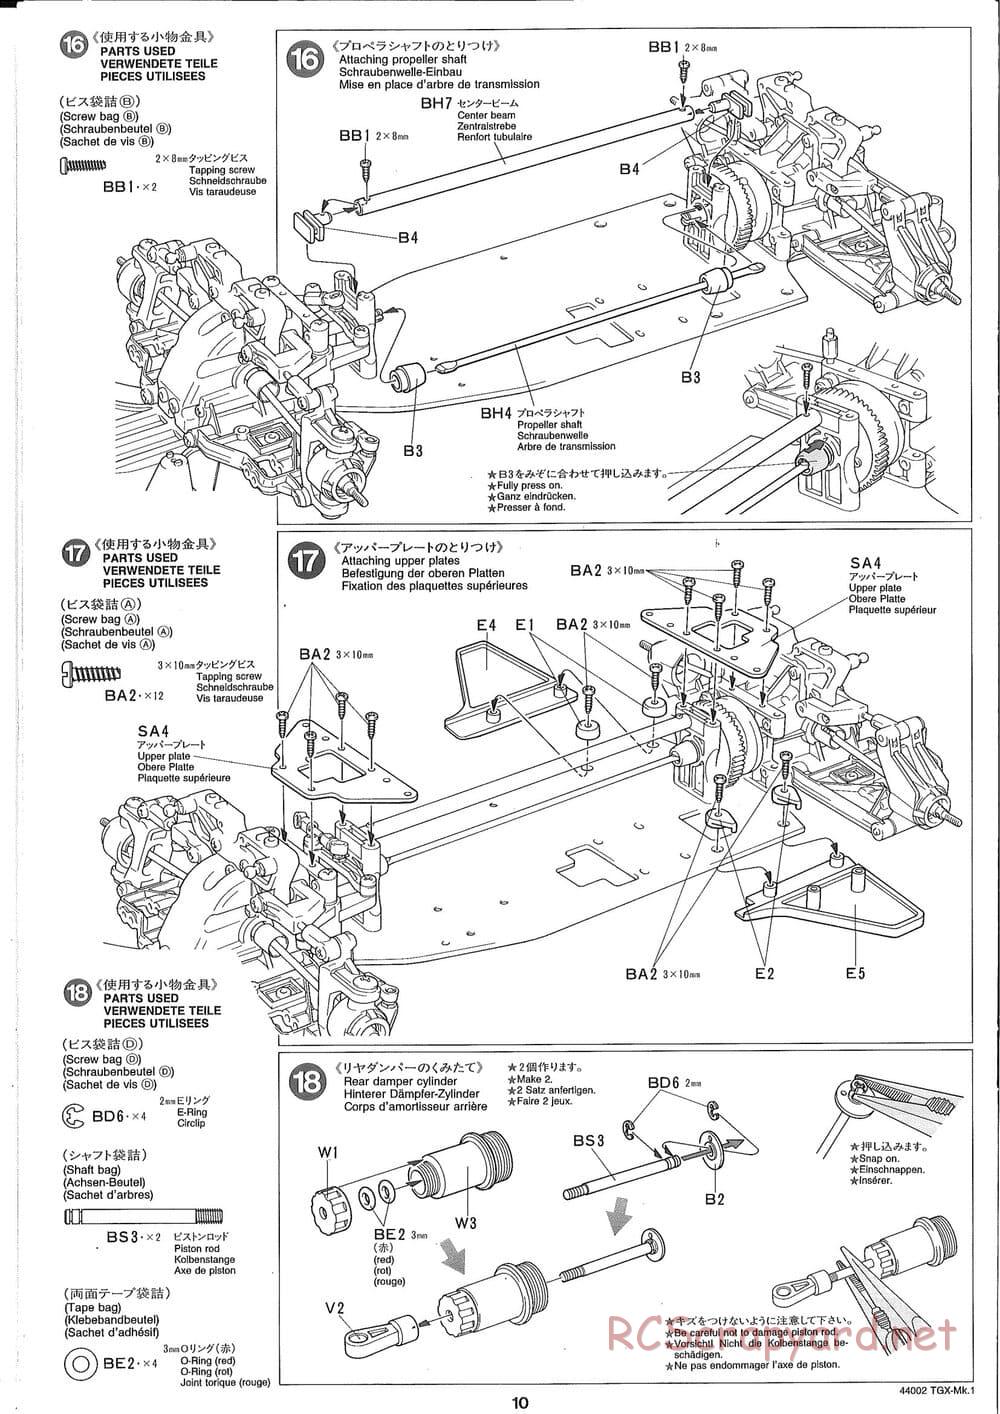 Tamiya - TGX Mk.1 TS Chassis Chassis - Manual - Page 10